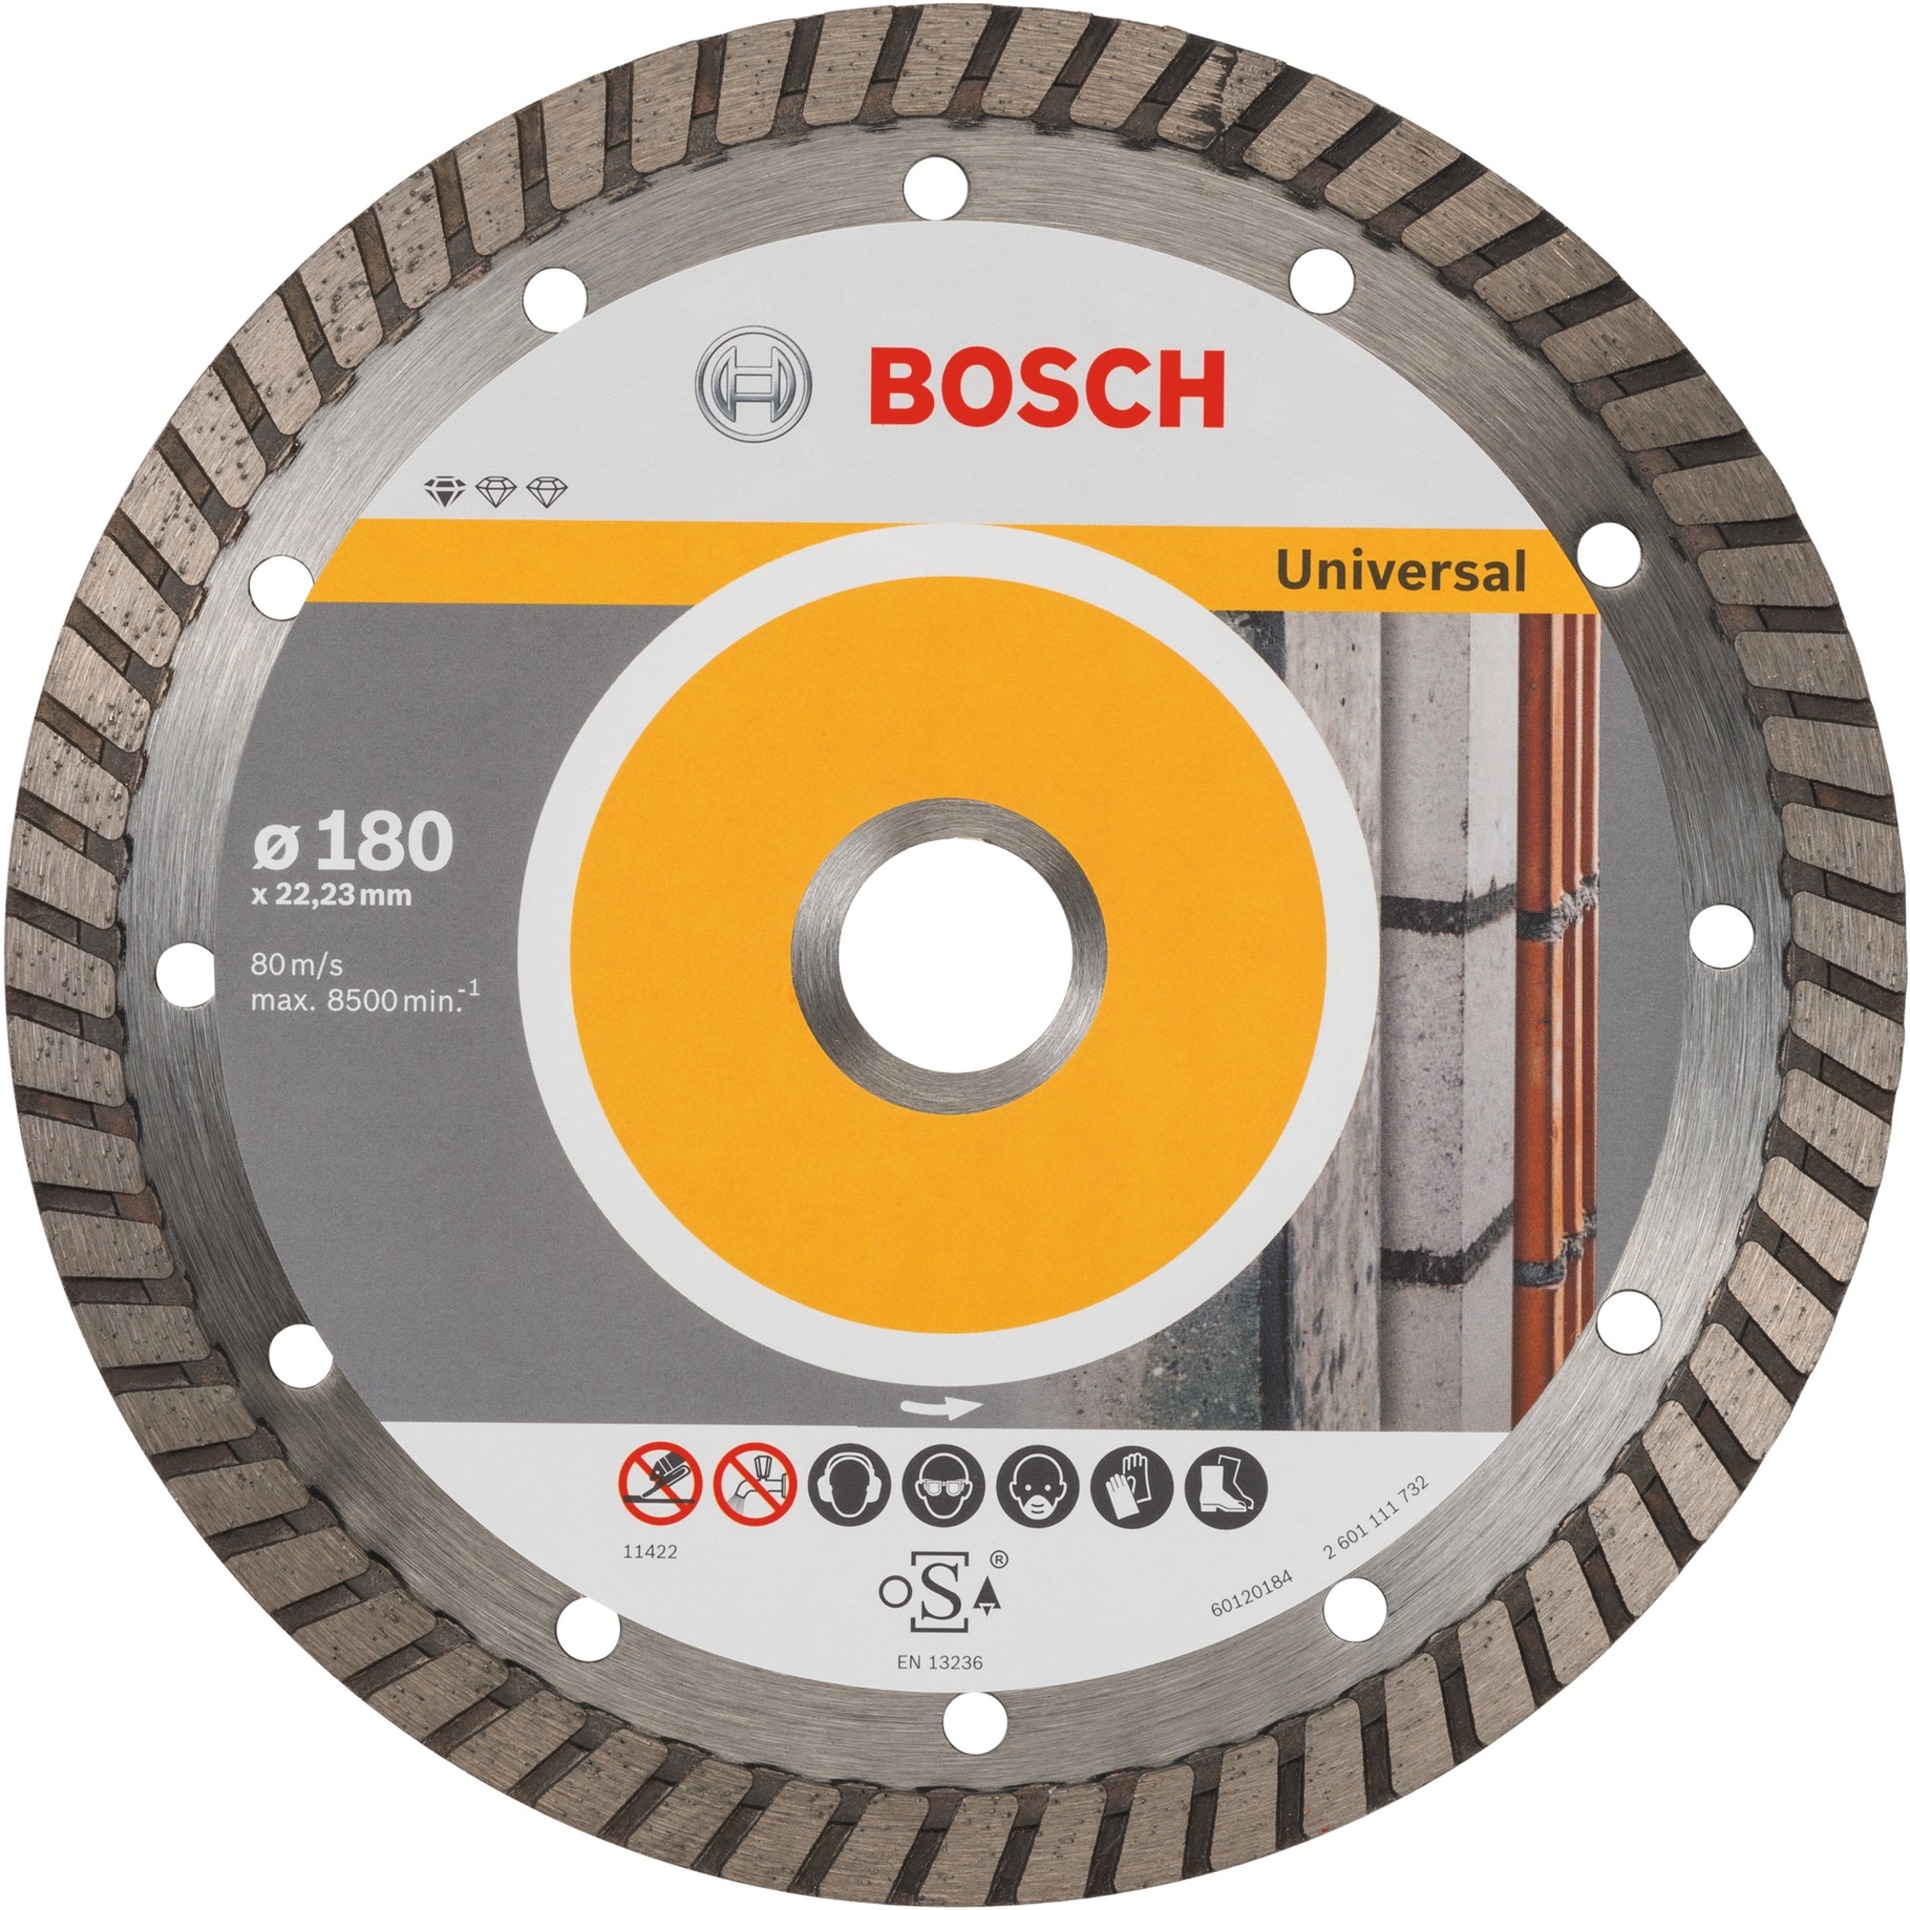 Diamanttrennscheibe Standard for Universal Turbo, Ø 180mm von Bosch